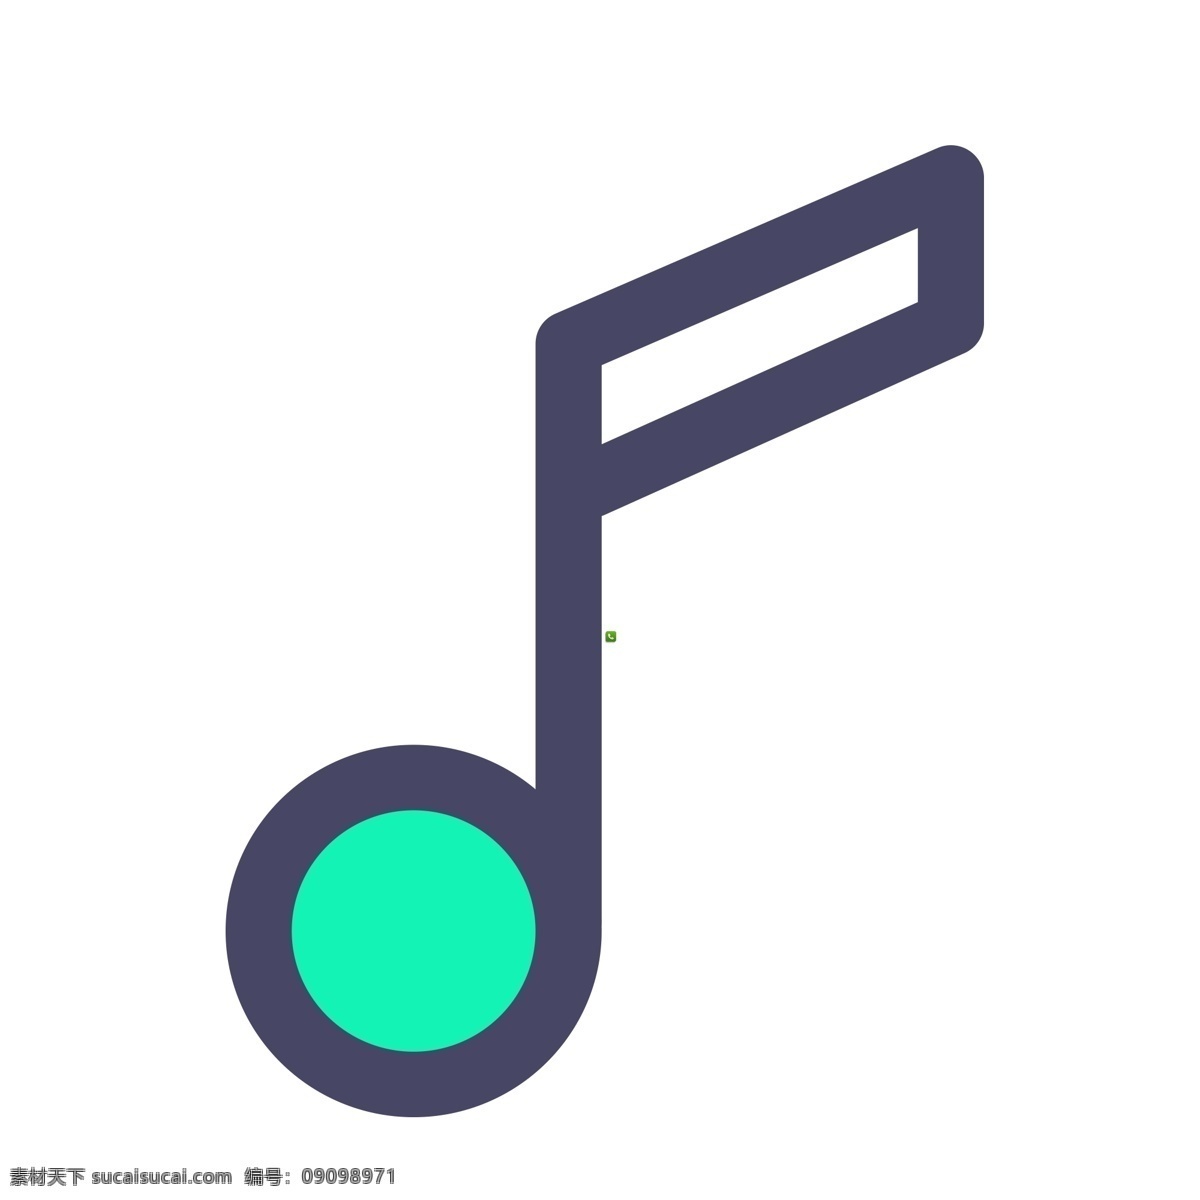 音乐符号 音乐图标 扁平化ui ui图标 手机图标 界面ui 网页ui h5图标